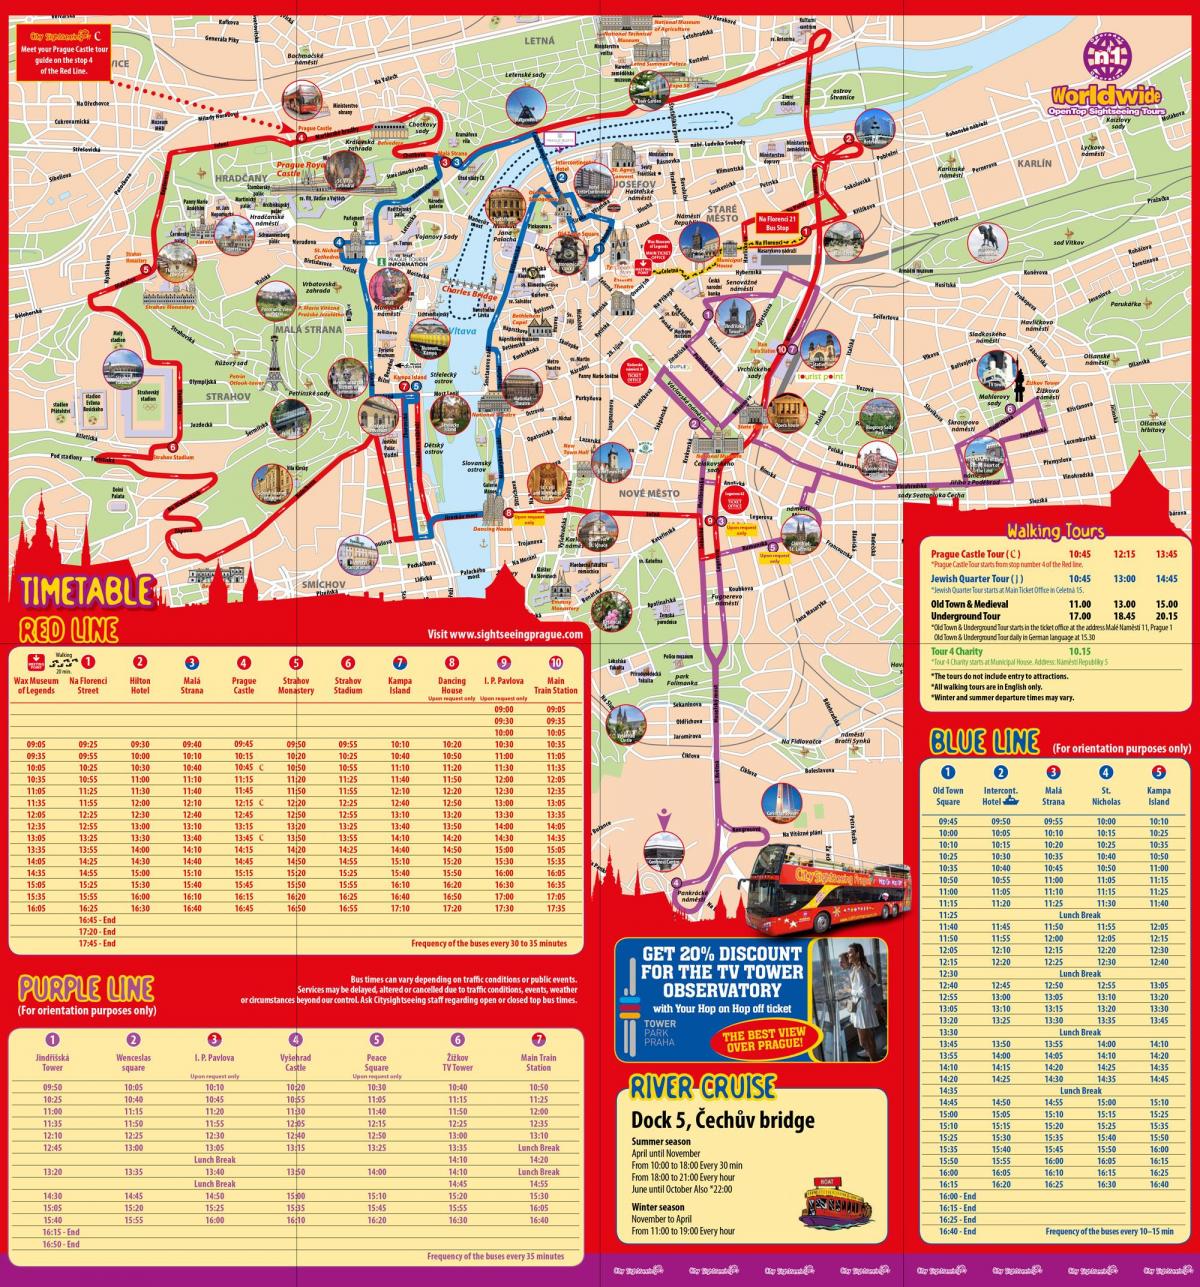 Прага-хоп-хоп-офф маршрут на карте